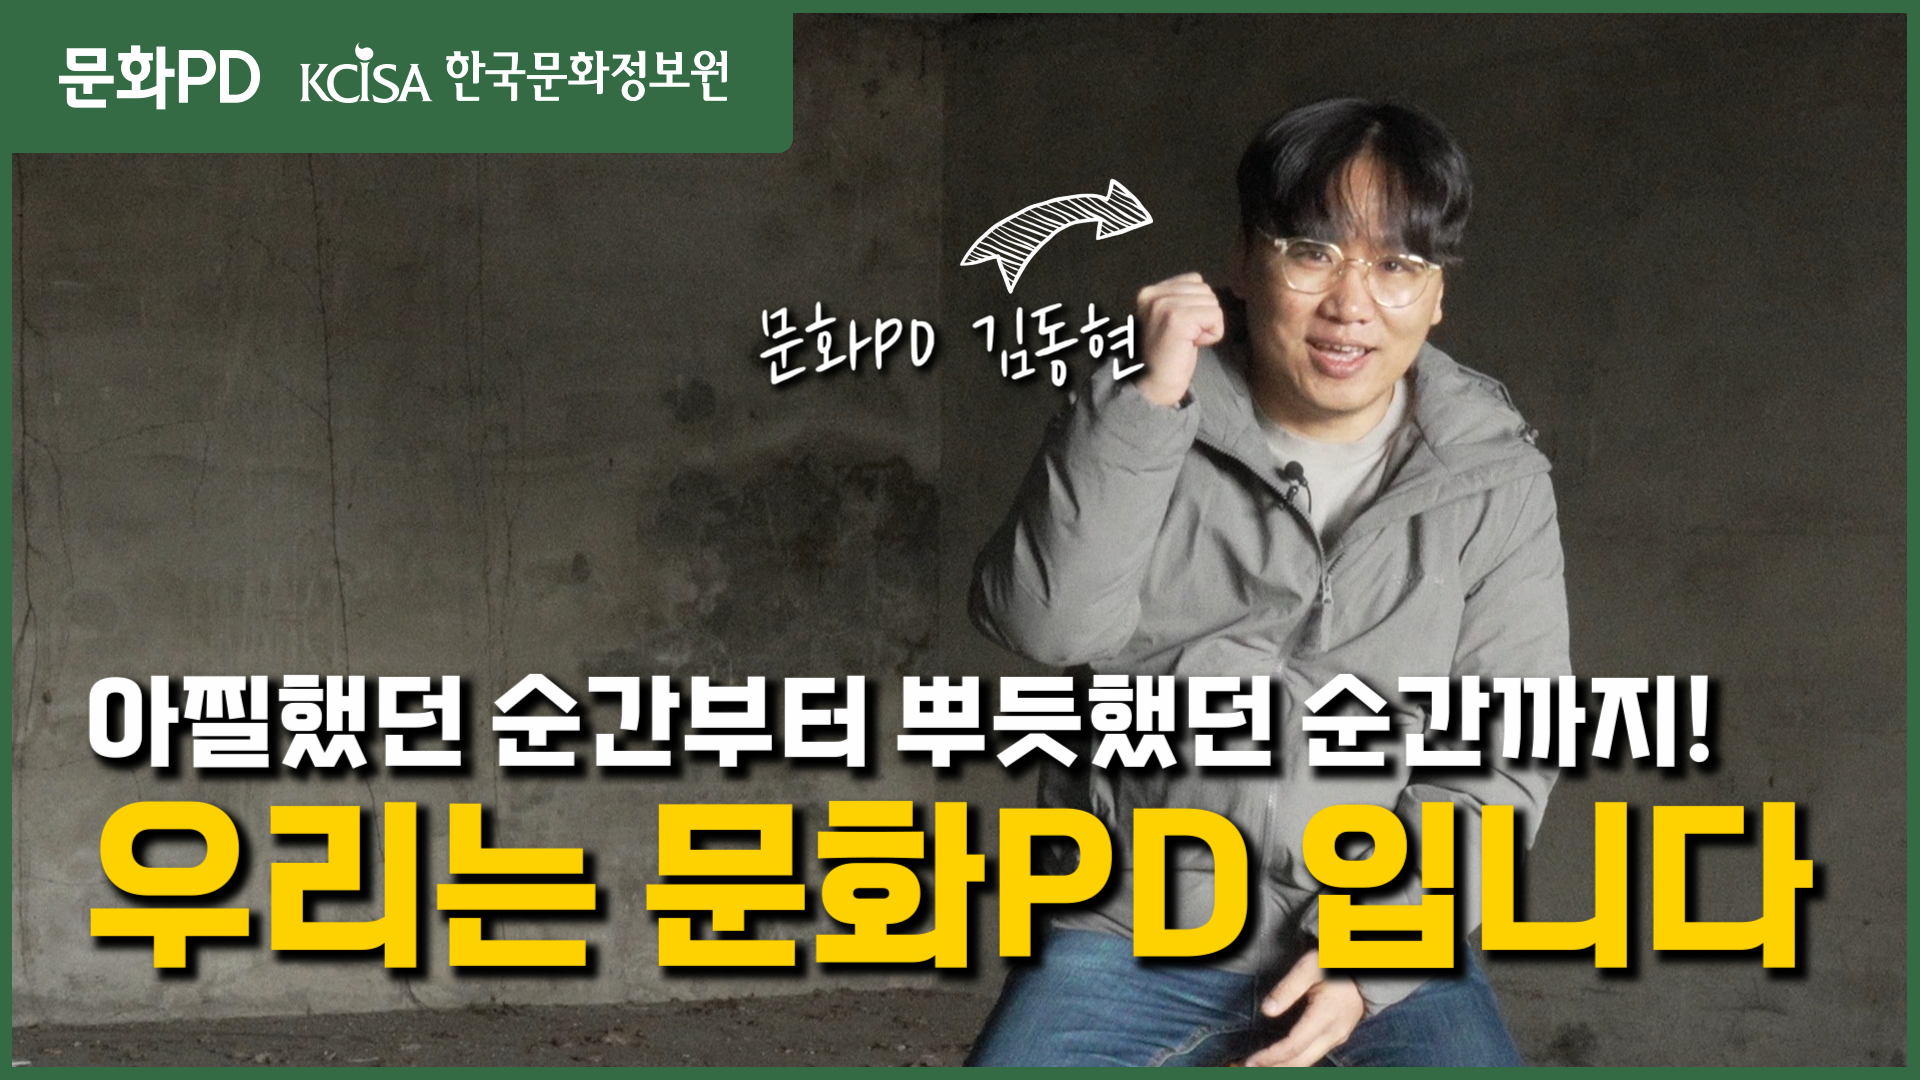 [문화PD] 아찔하지만 무조건 또 하고 싶었던 문화PD의 이야기 - 문화PD 김동현